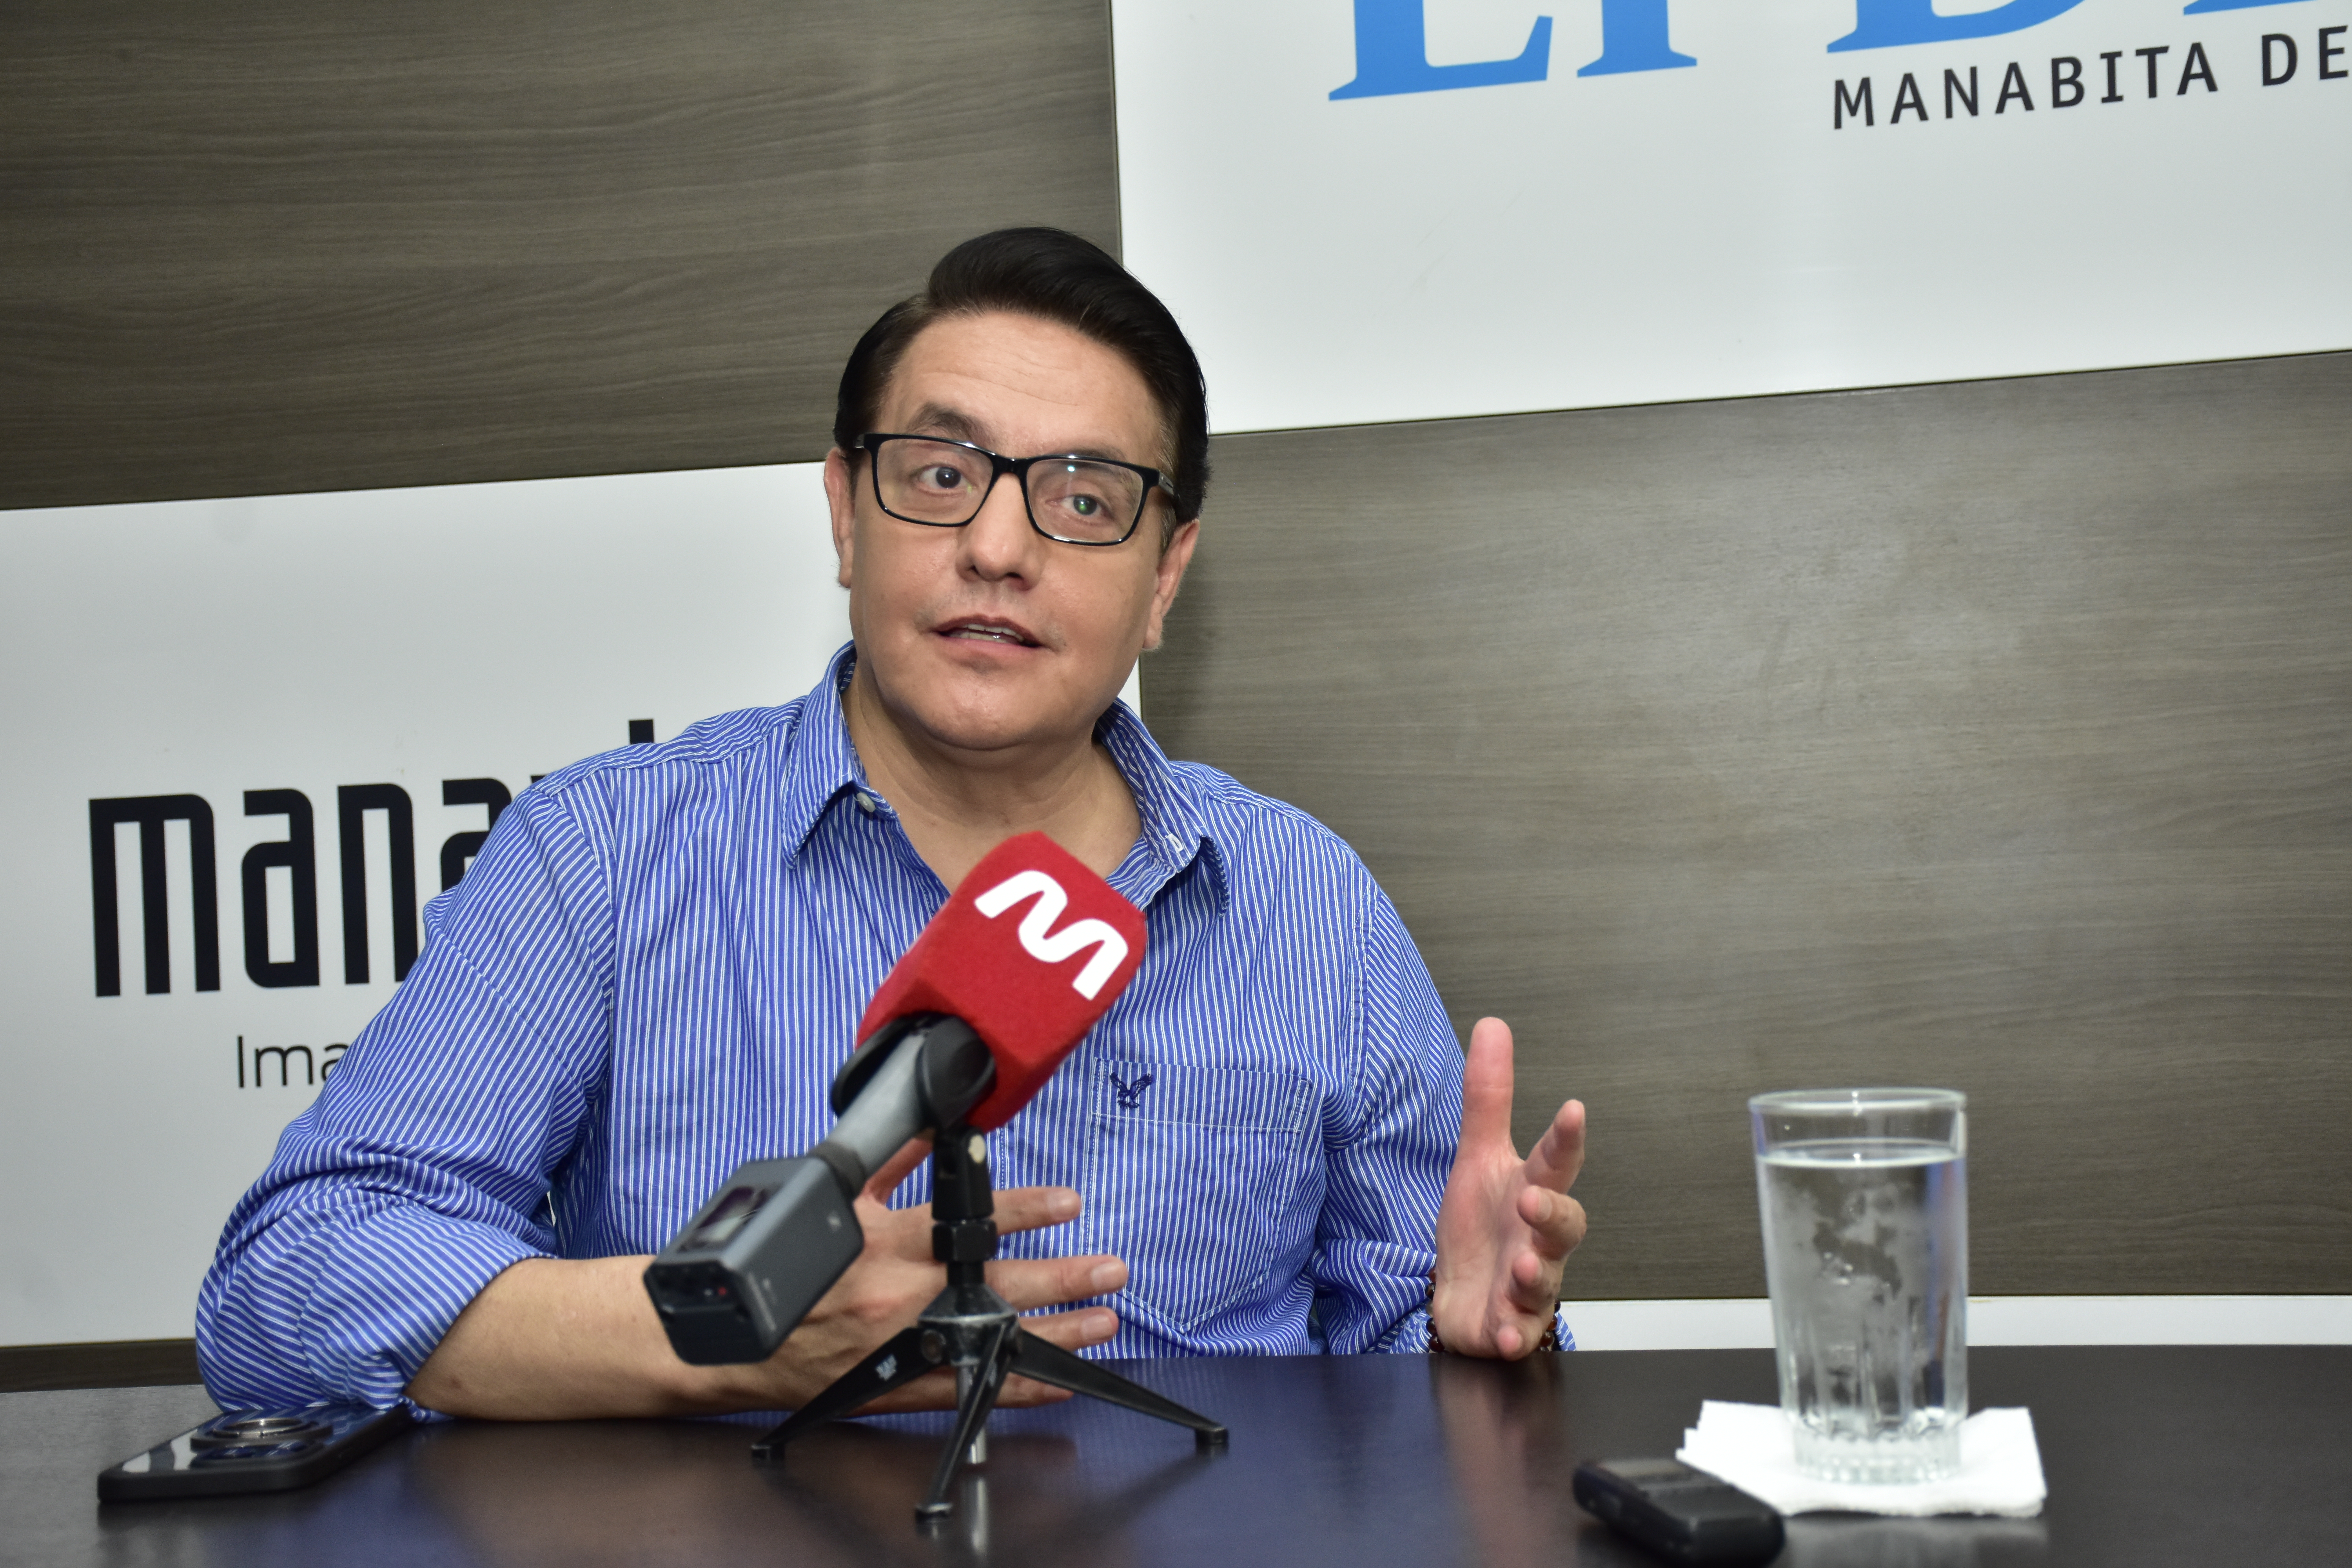 Fernando Villavicencio participara en las elecciones anticipadas